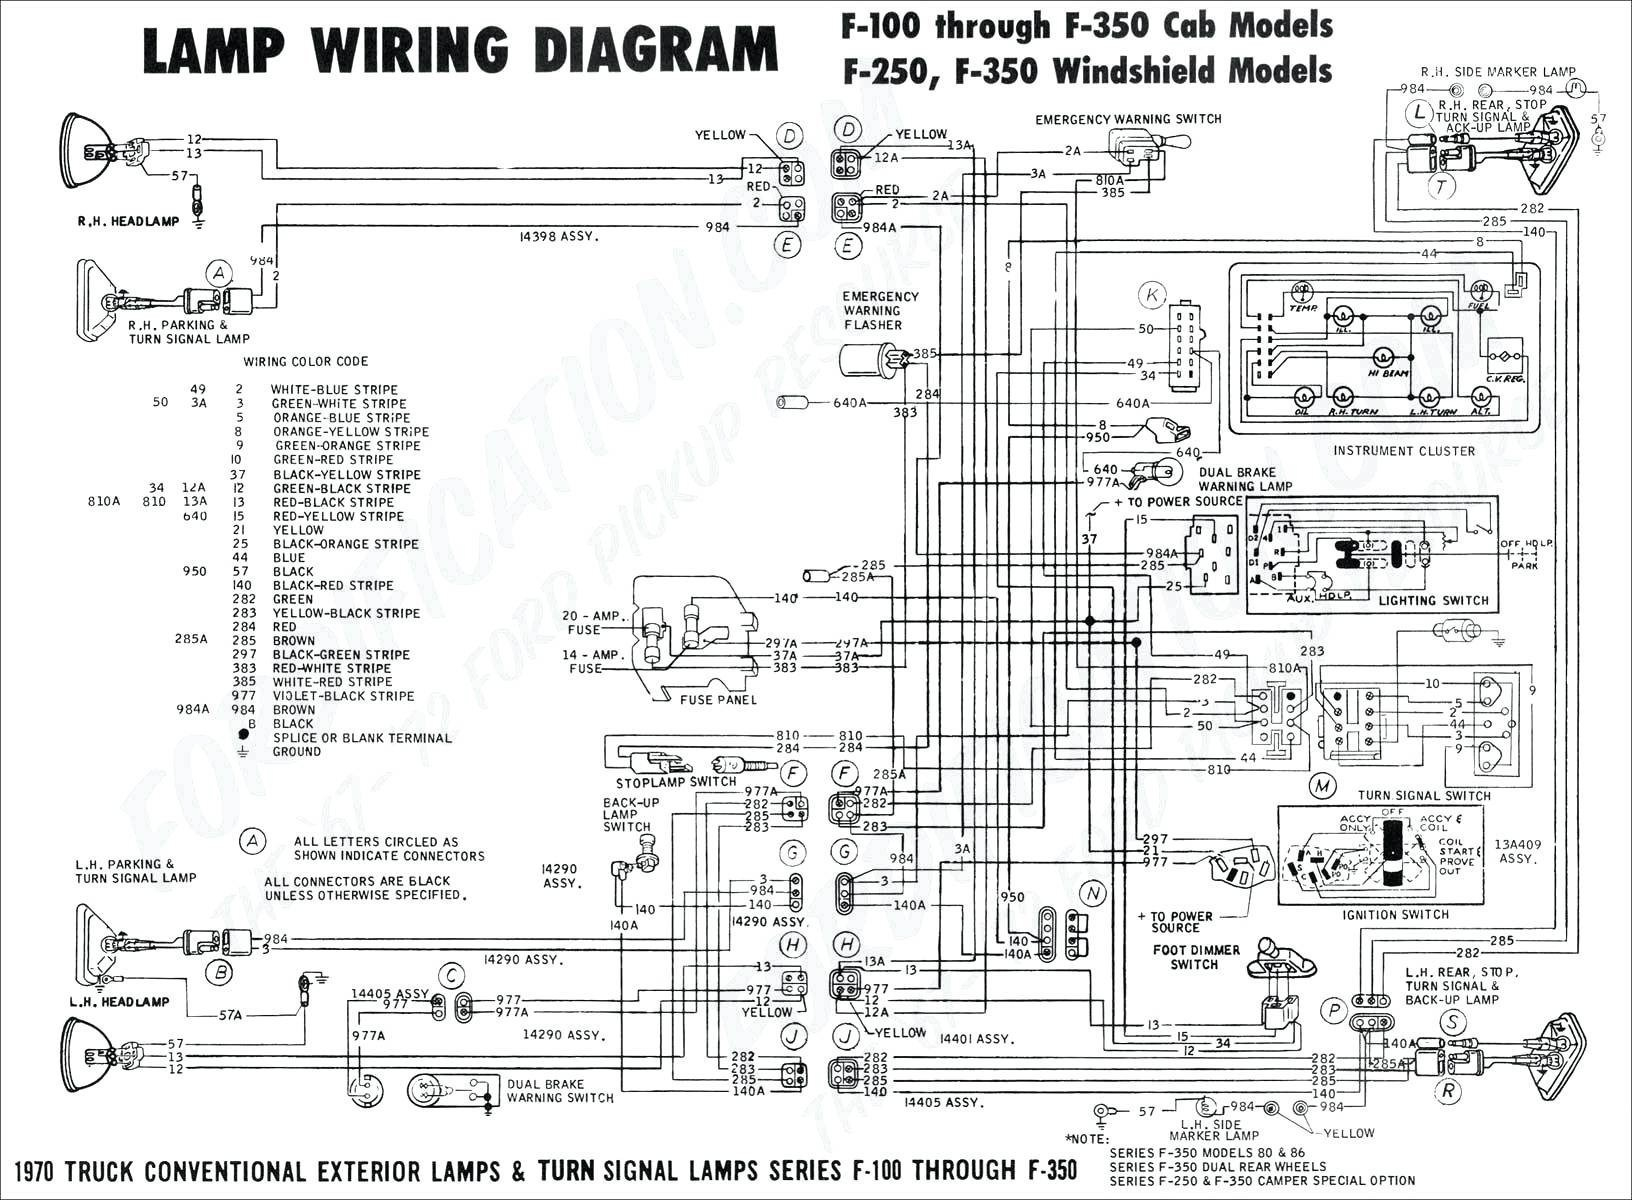 4Way Switch Wiring Diagram Wiring A 4 Way Switch 4 Way Switch Diagram Four Way Caroldoey